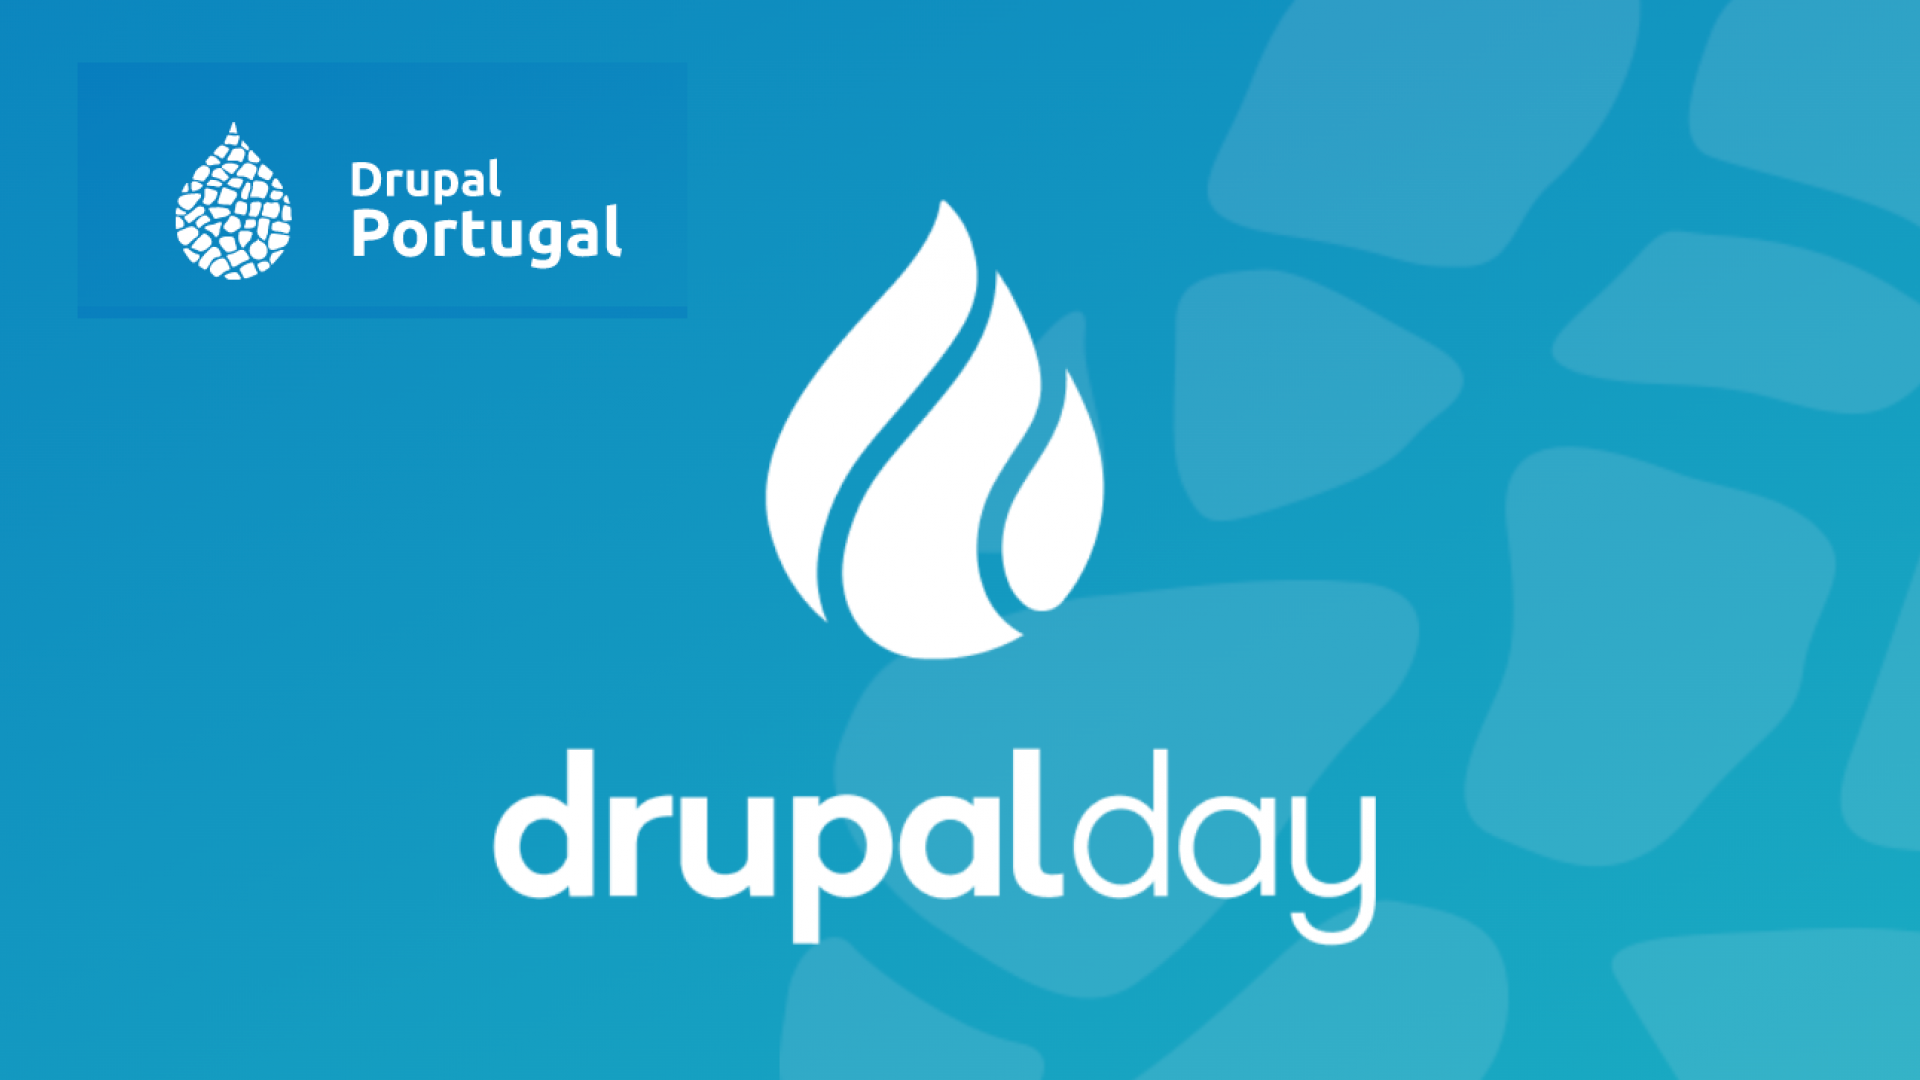 DrupalDay logo of Drupal Portugal